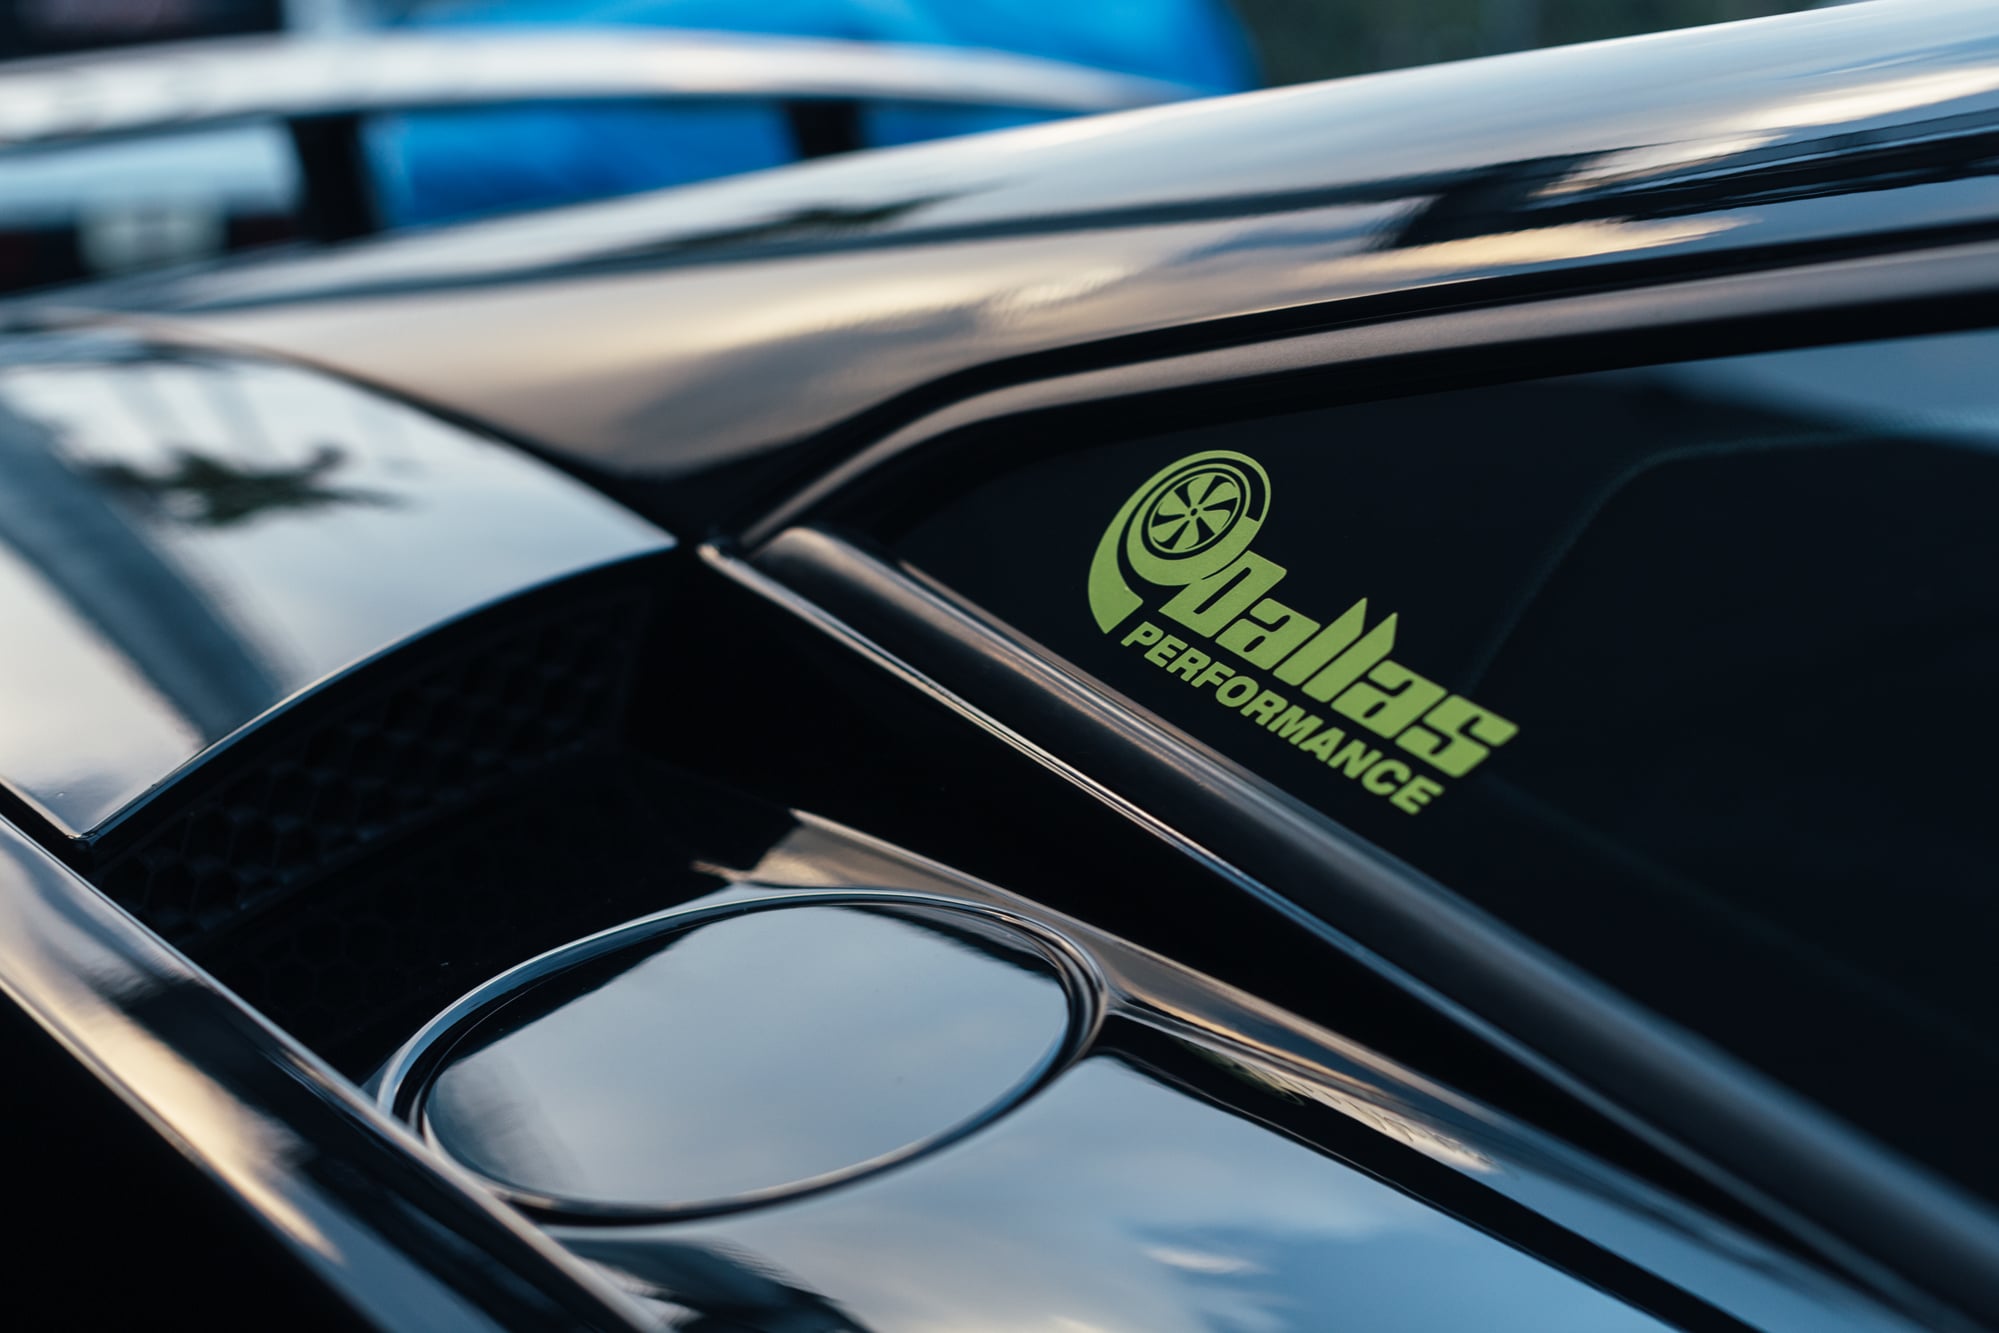 2009 Lamborghini Gallardo Twin-Turbo by Dallas Performance (1,847 BHP/ 1,719 WHP) | 6 Speed Manual